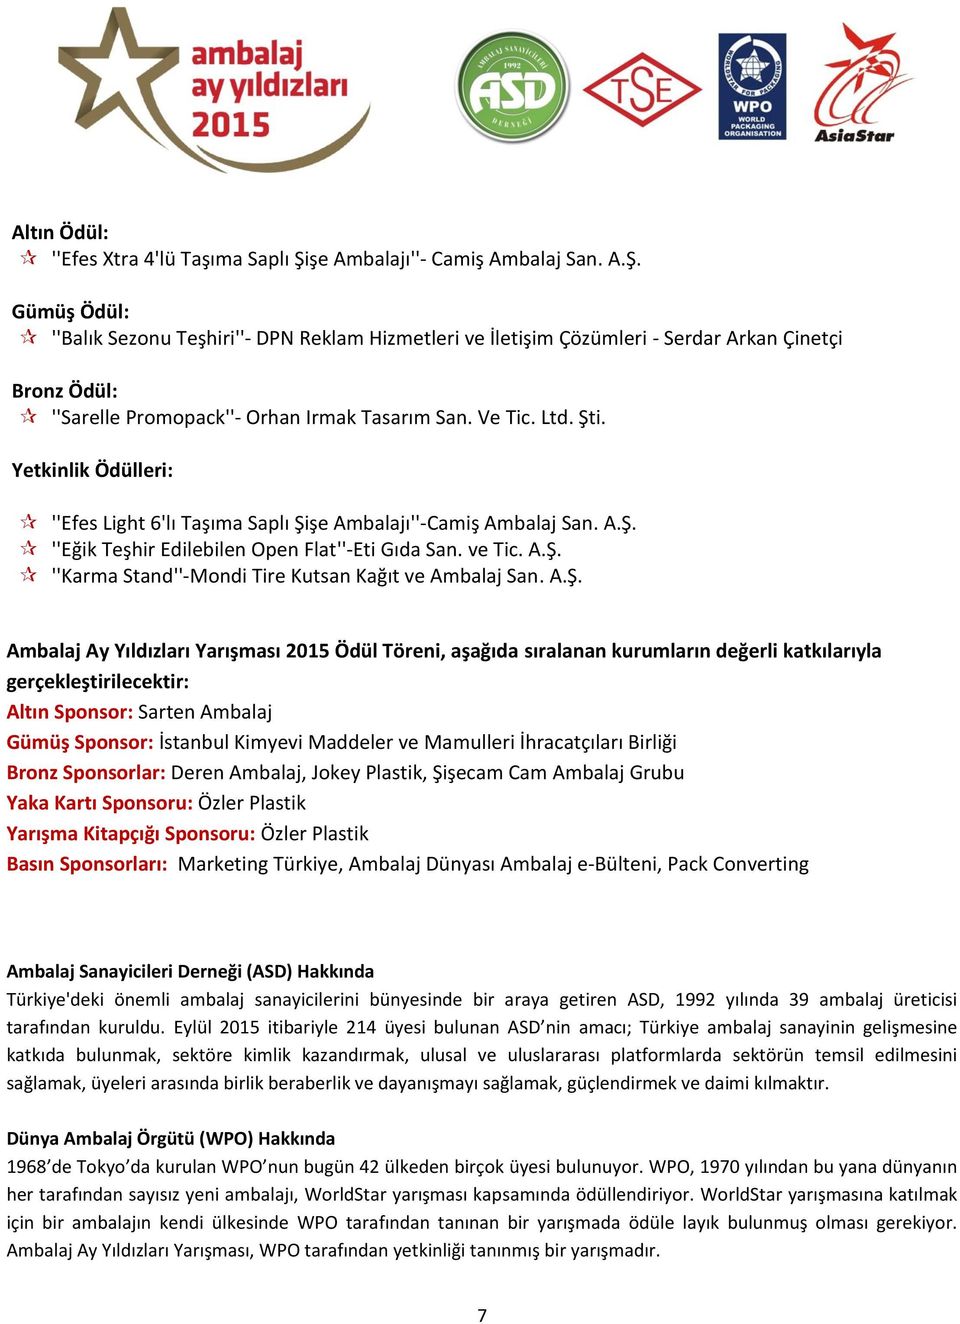 A.Ş. Ambalaj Ay Yıldızları Yarışması 2015 Ödül Töreni, aşağıda sıralanan kurumların değerli katkılarıyla gerçekleştirilecektir: Altın Sponsor: Sarten Ambalaj Gümüş Sponsor: İstanbul Kimyevi Maddeler